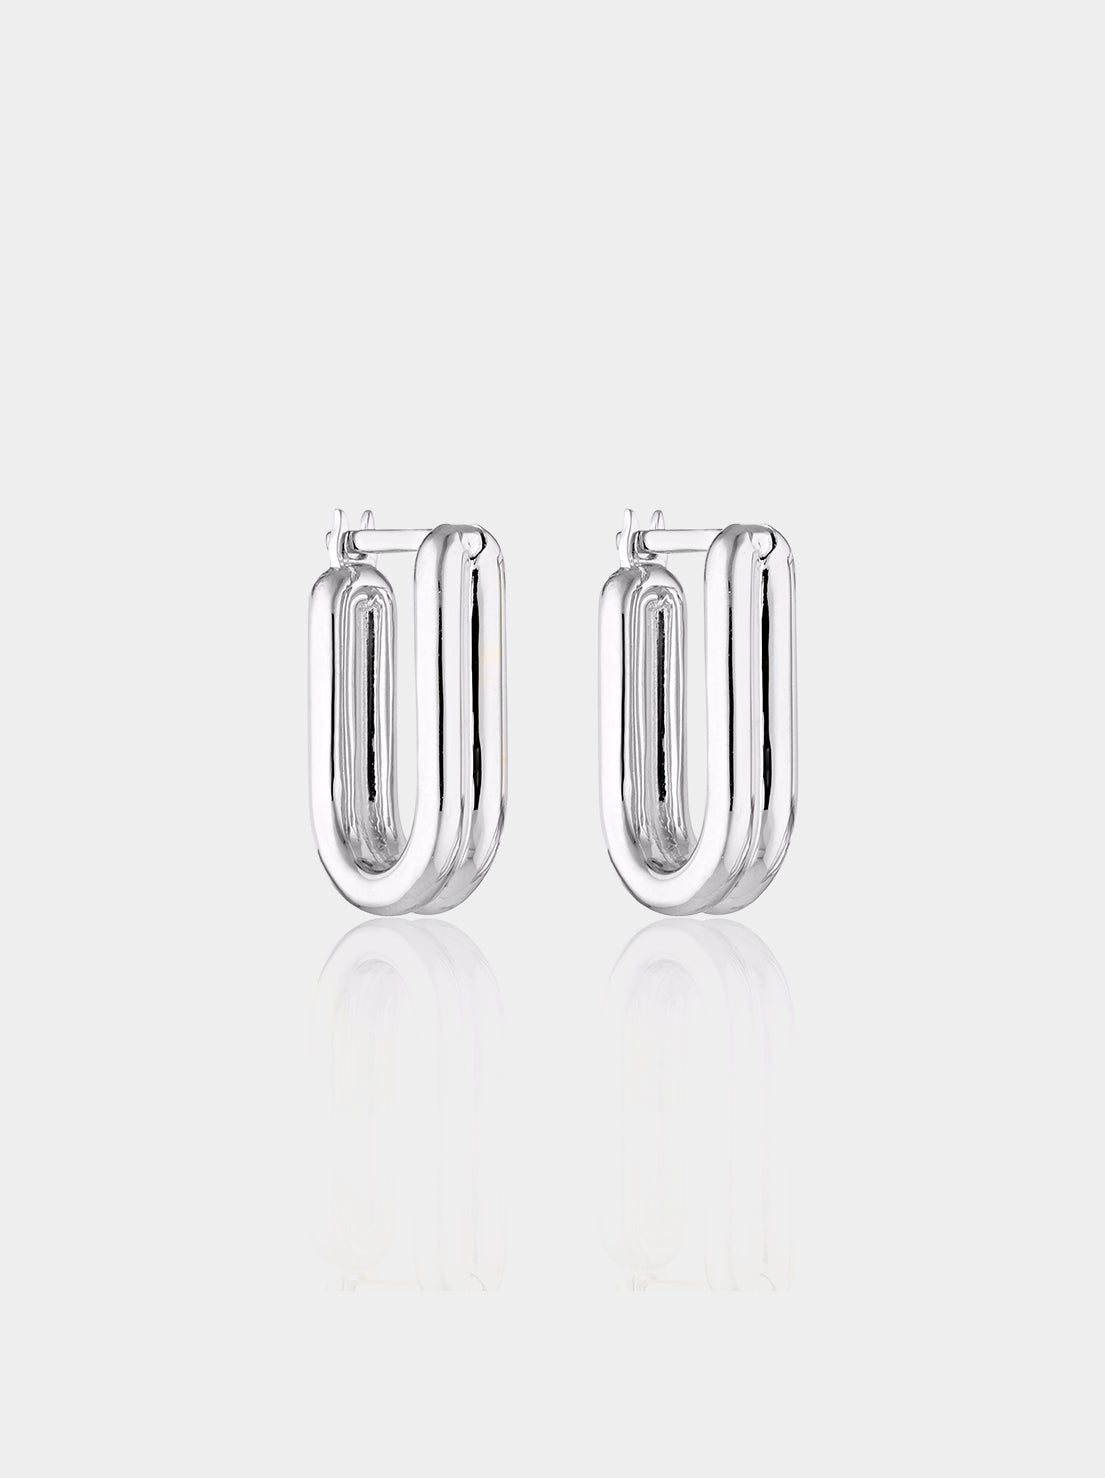 Linda Tahija - Twofold Hoop Earrings - Sterling Silver